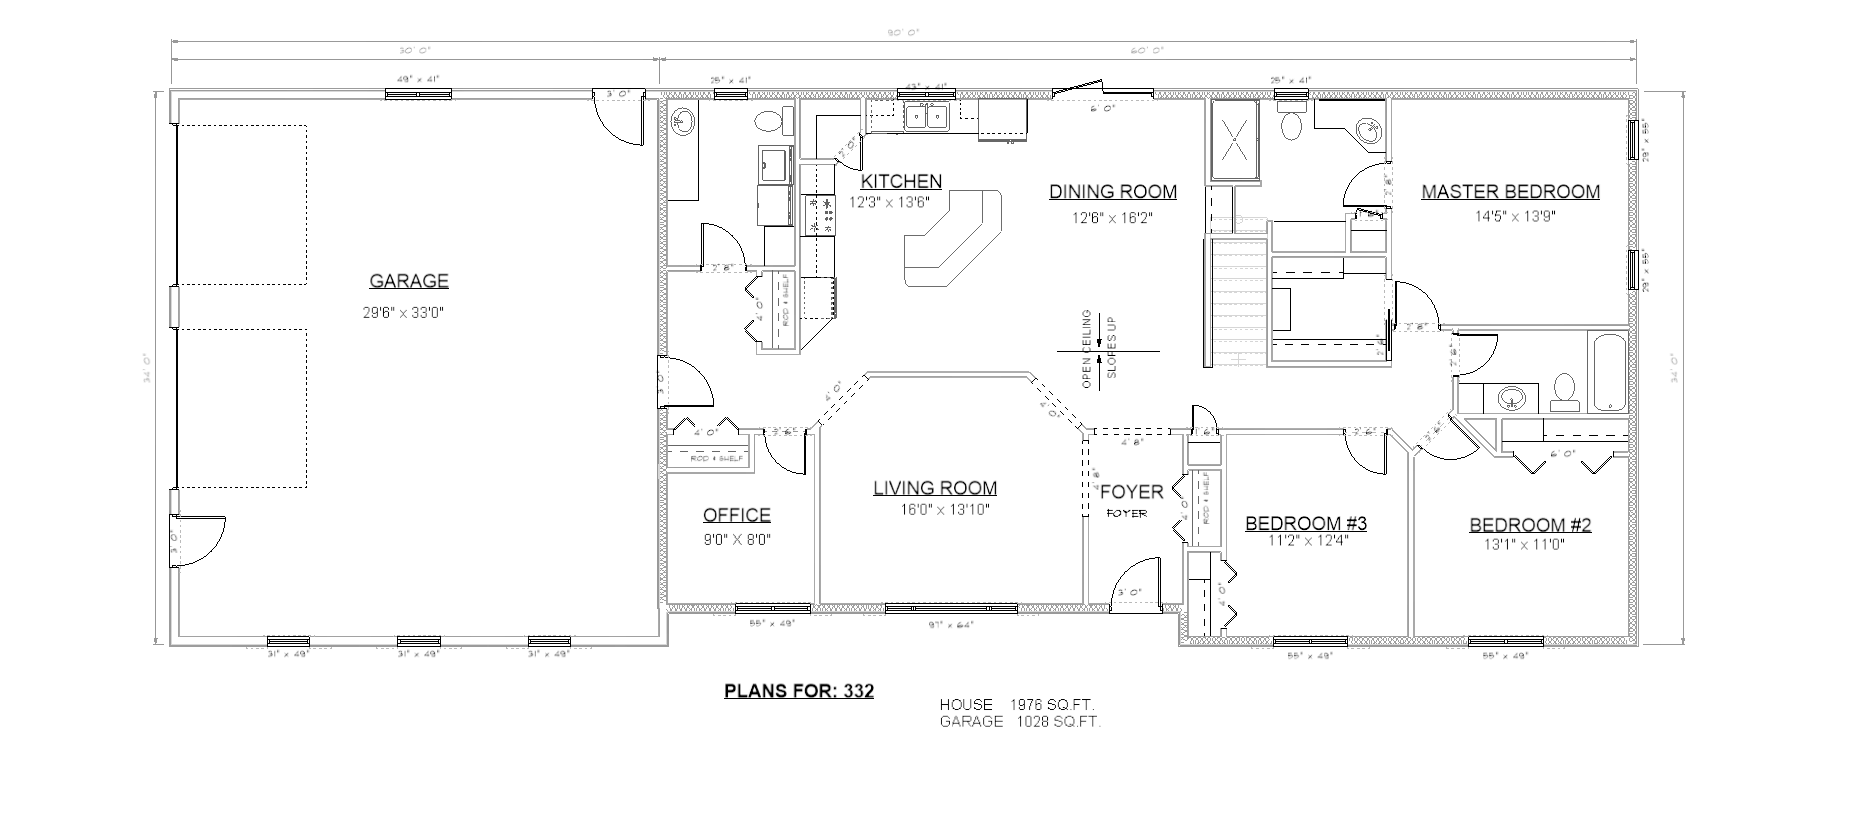 Penner Homes Floor Plan Id: 332